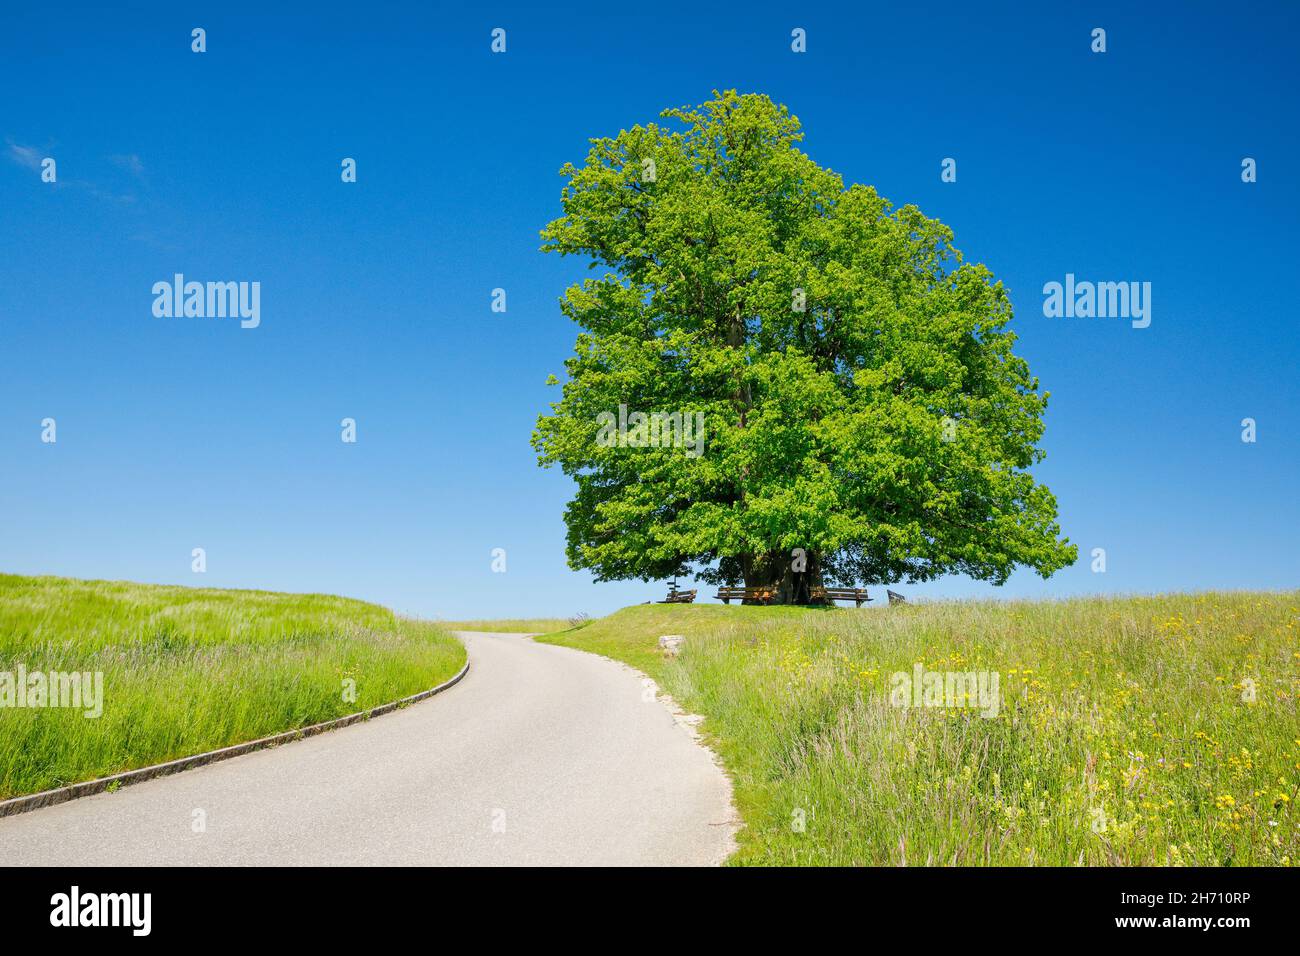 Die Linner Linden. Der alte Lindenbaum steht einsam auf einem Hügel unter blauem Himmel, der Weg führt daran vorbei und Bänke laden zum Entspannen ein, Linn im Kanton Aargau, Schweiz. Stockfoto